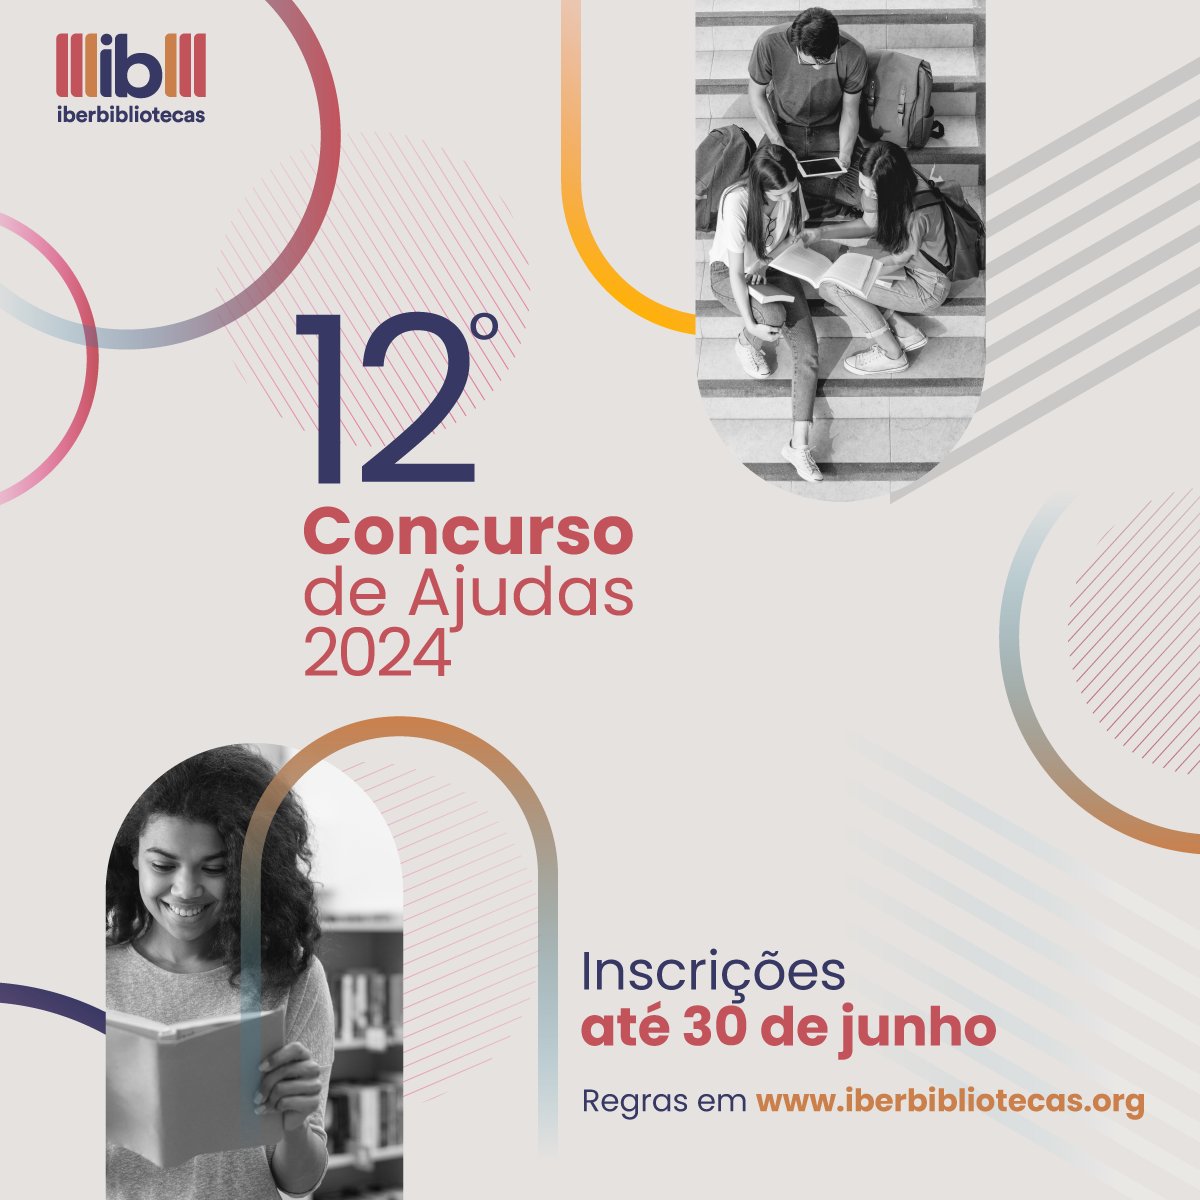 🇧🇷 Atenção bibliotecas públicas e comunitárias do #Brasil! Abrimos o 12º #ConcursoDeAjudas para apoiar projetos de #bibliotecas. ✍️Este ano contamos com o serviço de #assessoria para apresentação de projetos. Data de encerramento: 3⃣0⃣ de junho. 📃Bases: iberbibliotecas.org/por/convocator…